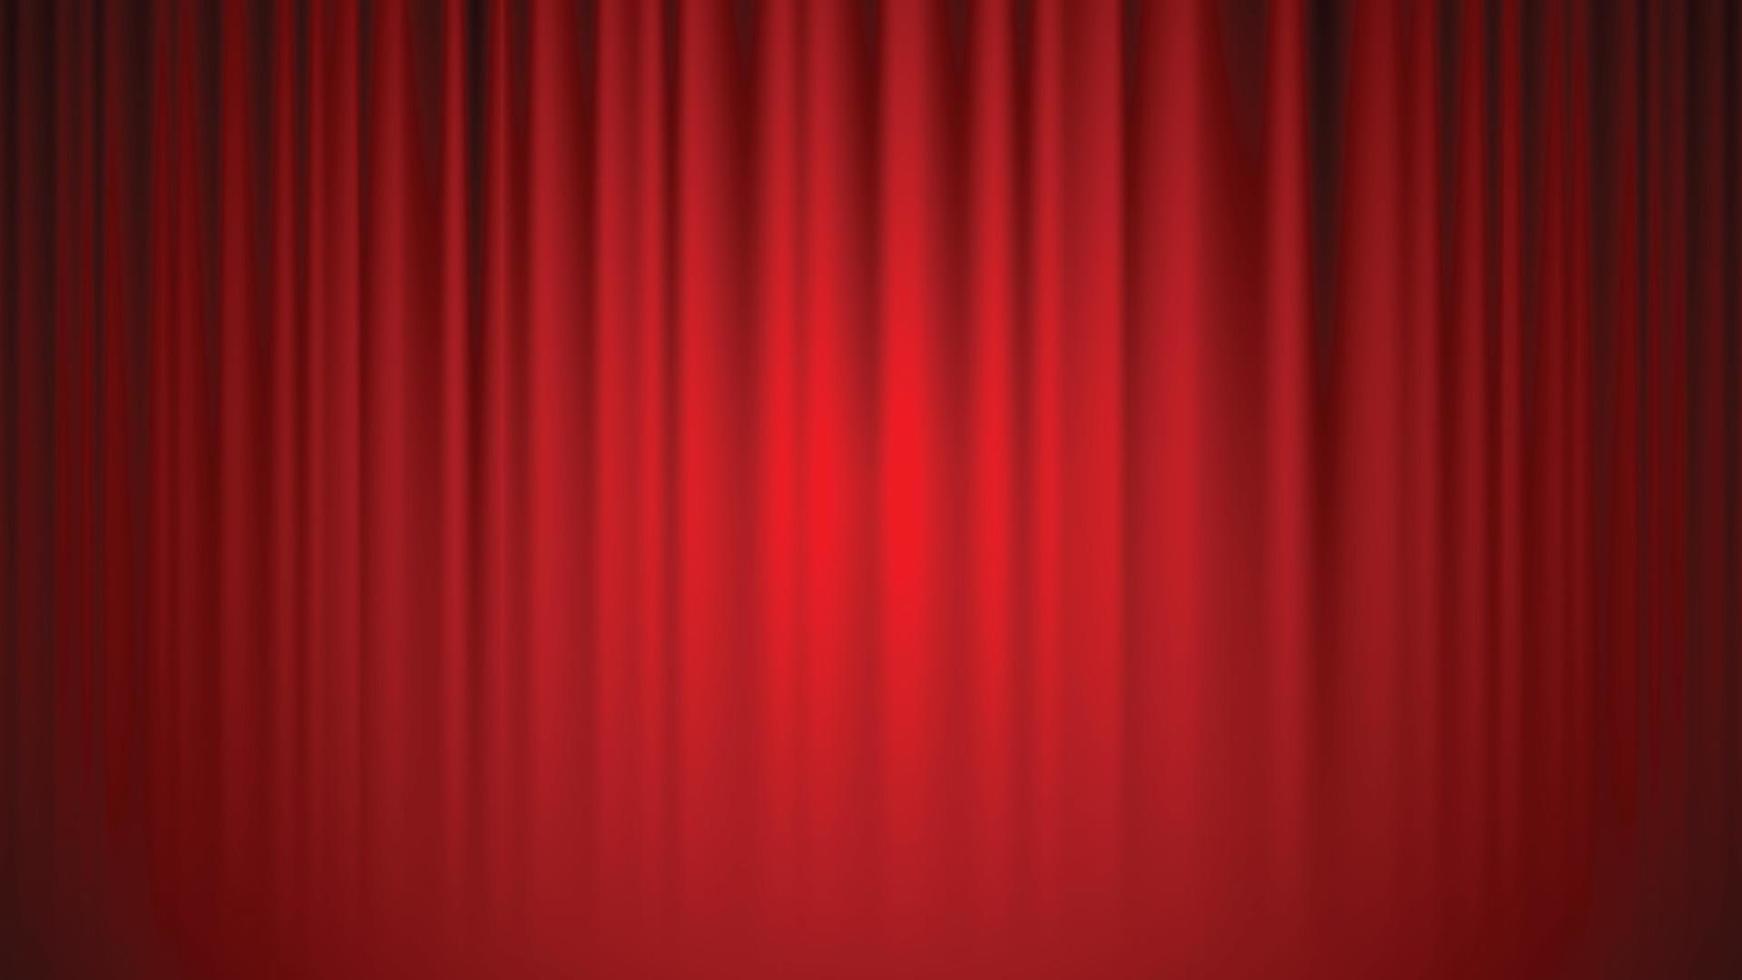 Teatro cinema le tende rosso le tende sfondo illuminato di un' fascio di riflettore. vettore illustrazione.